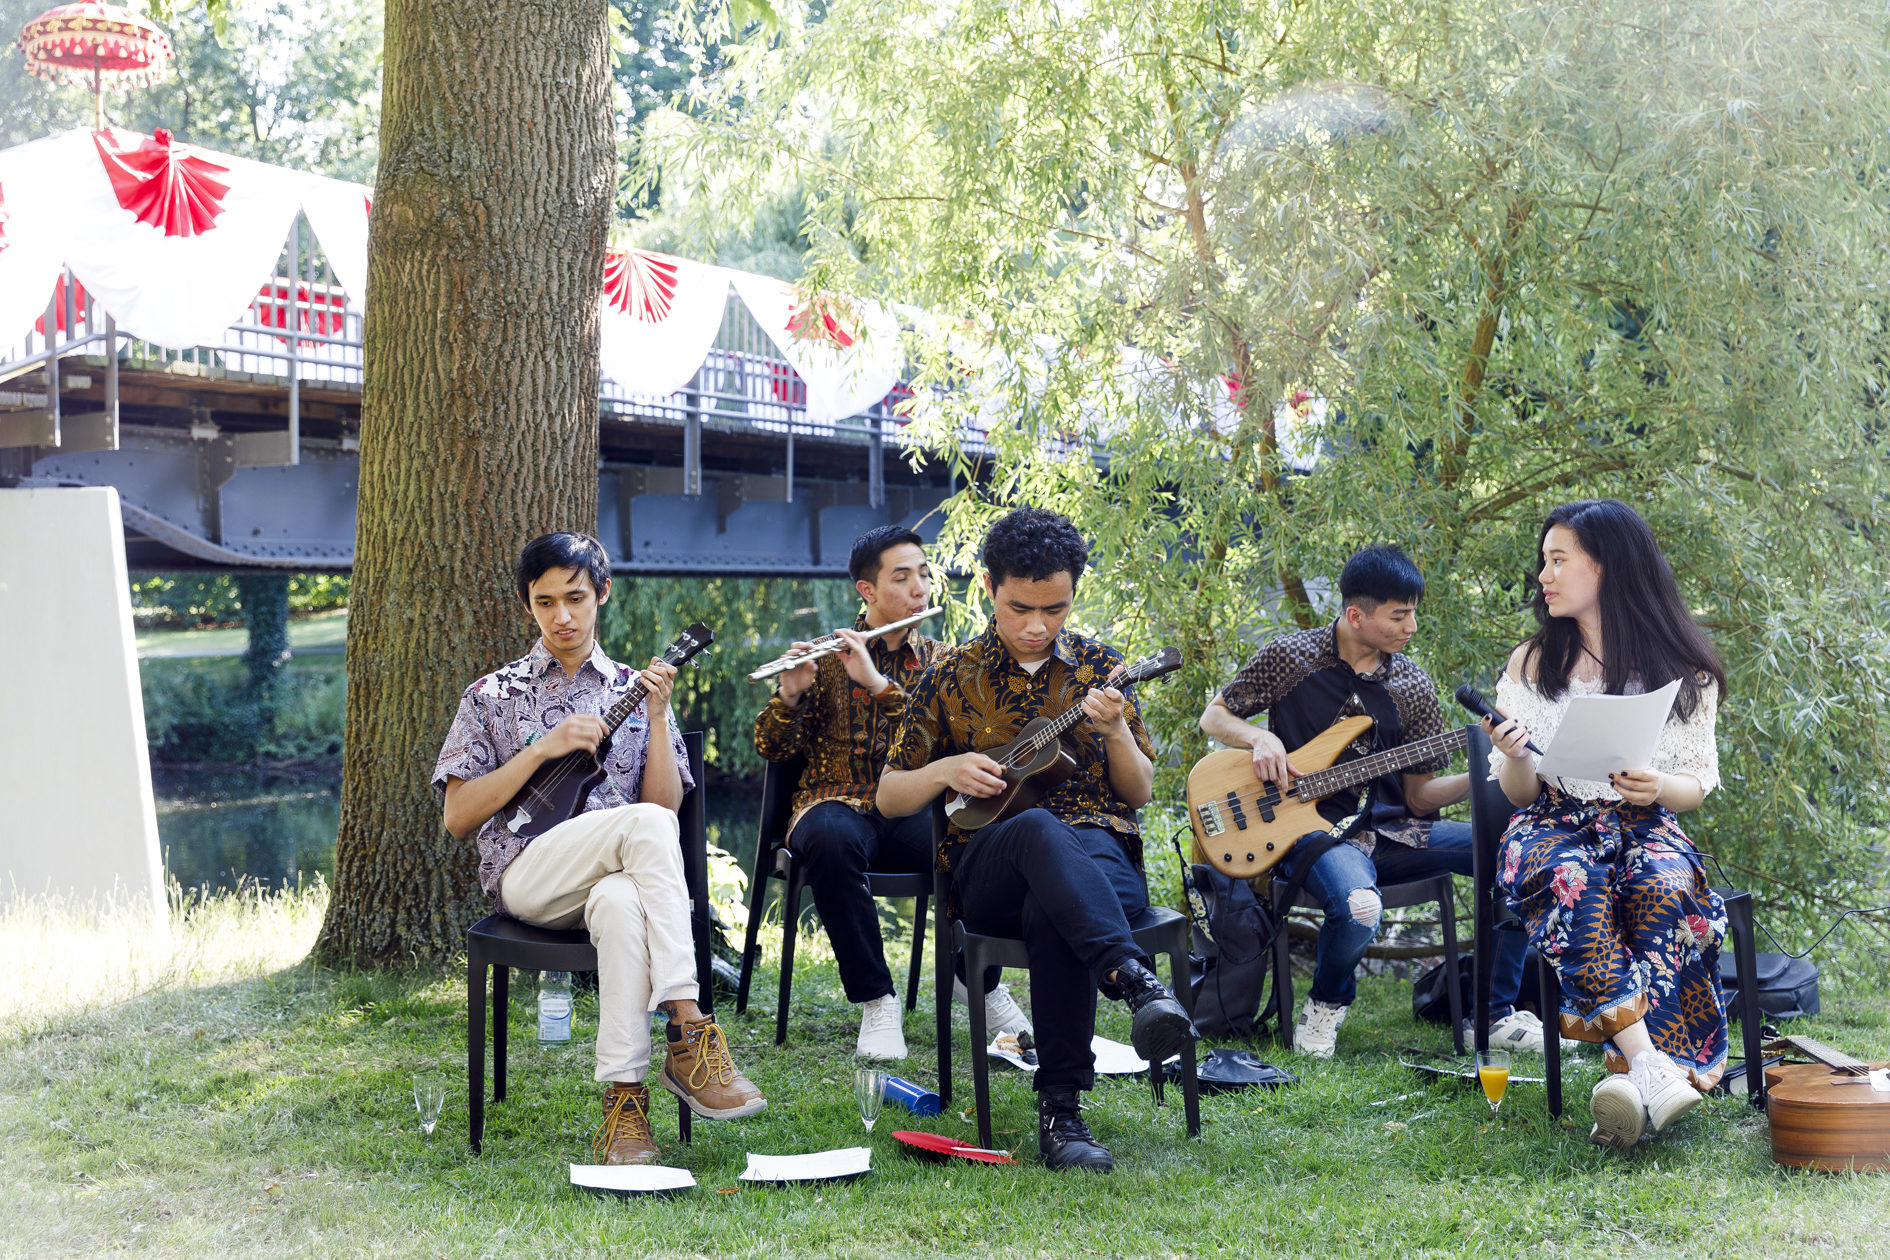 Die Musikgruppe spielt traditionelle indonesische Kroncong-Musik